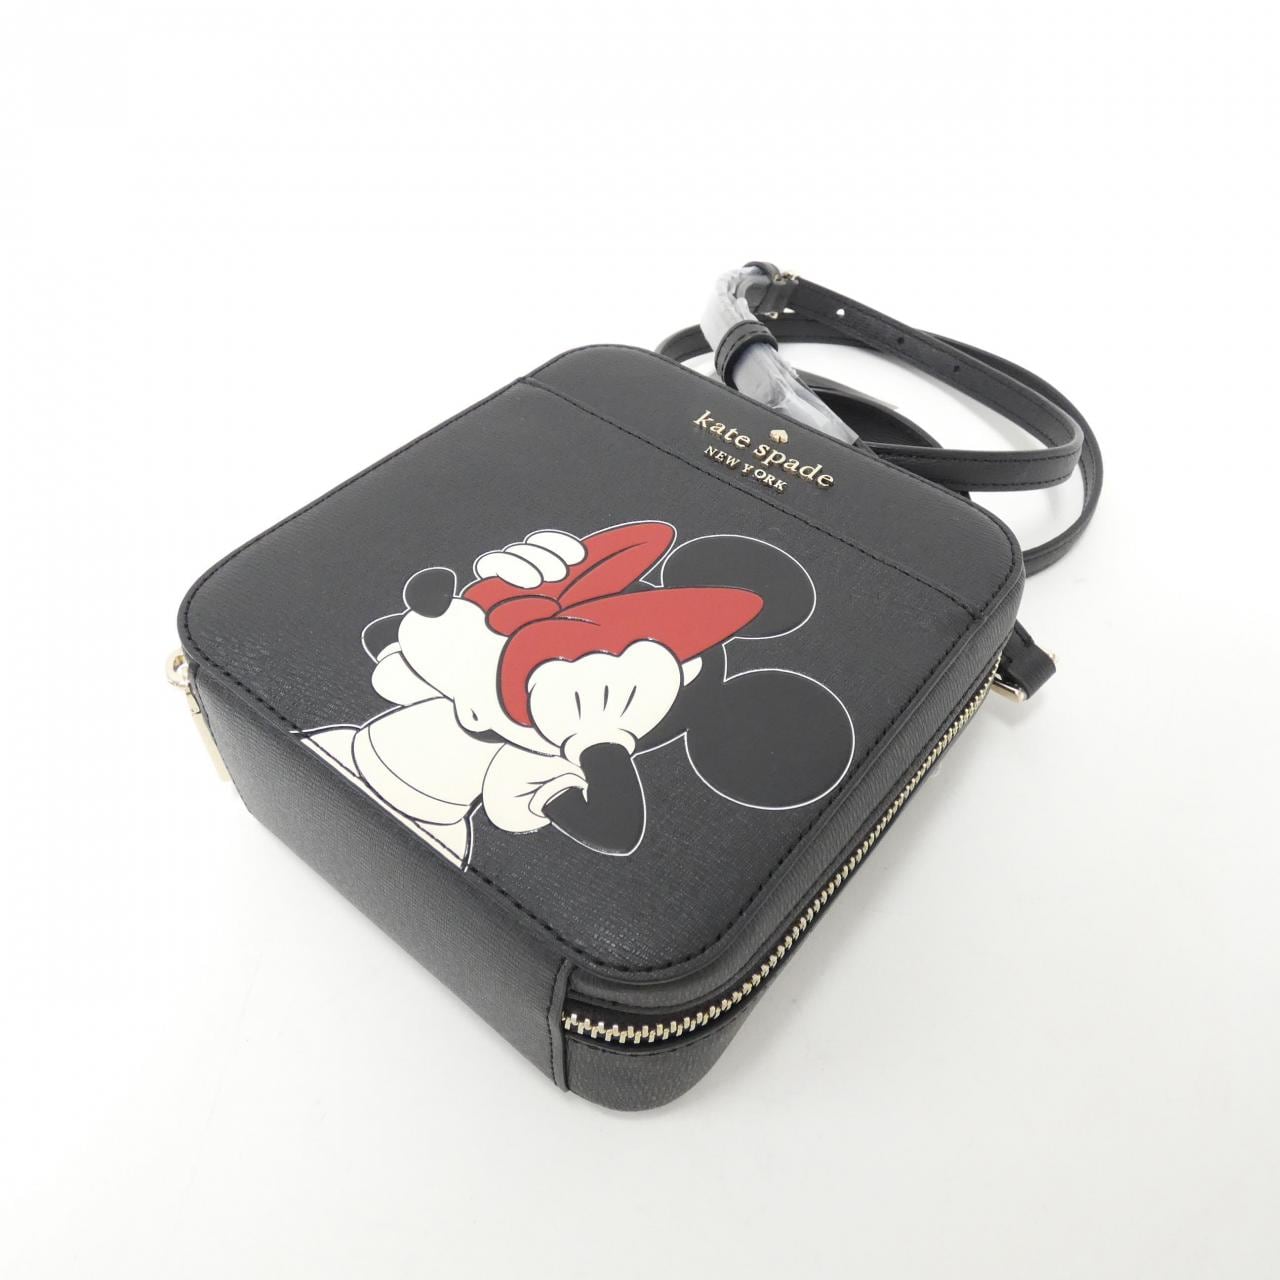 Disney Minnie Mouse Handbag By Kate Spade New York New ❤️ | eBay